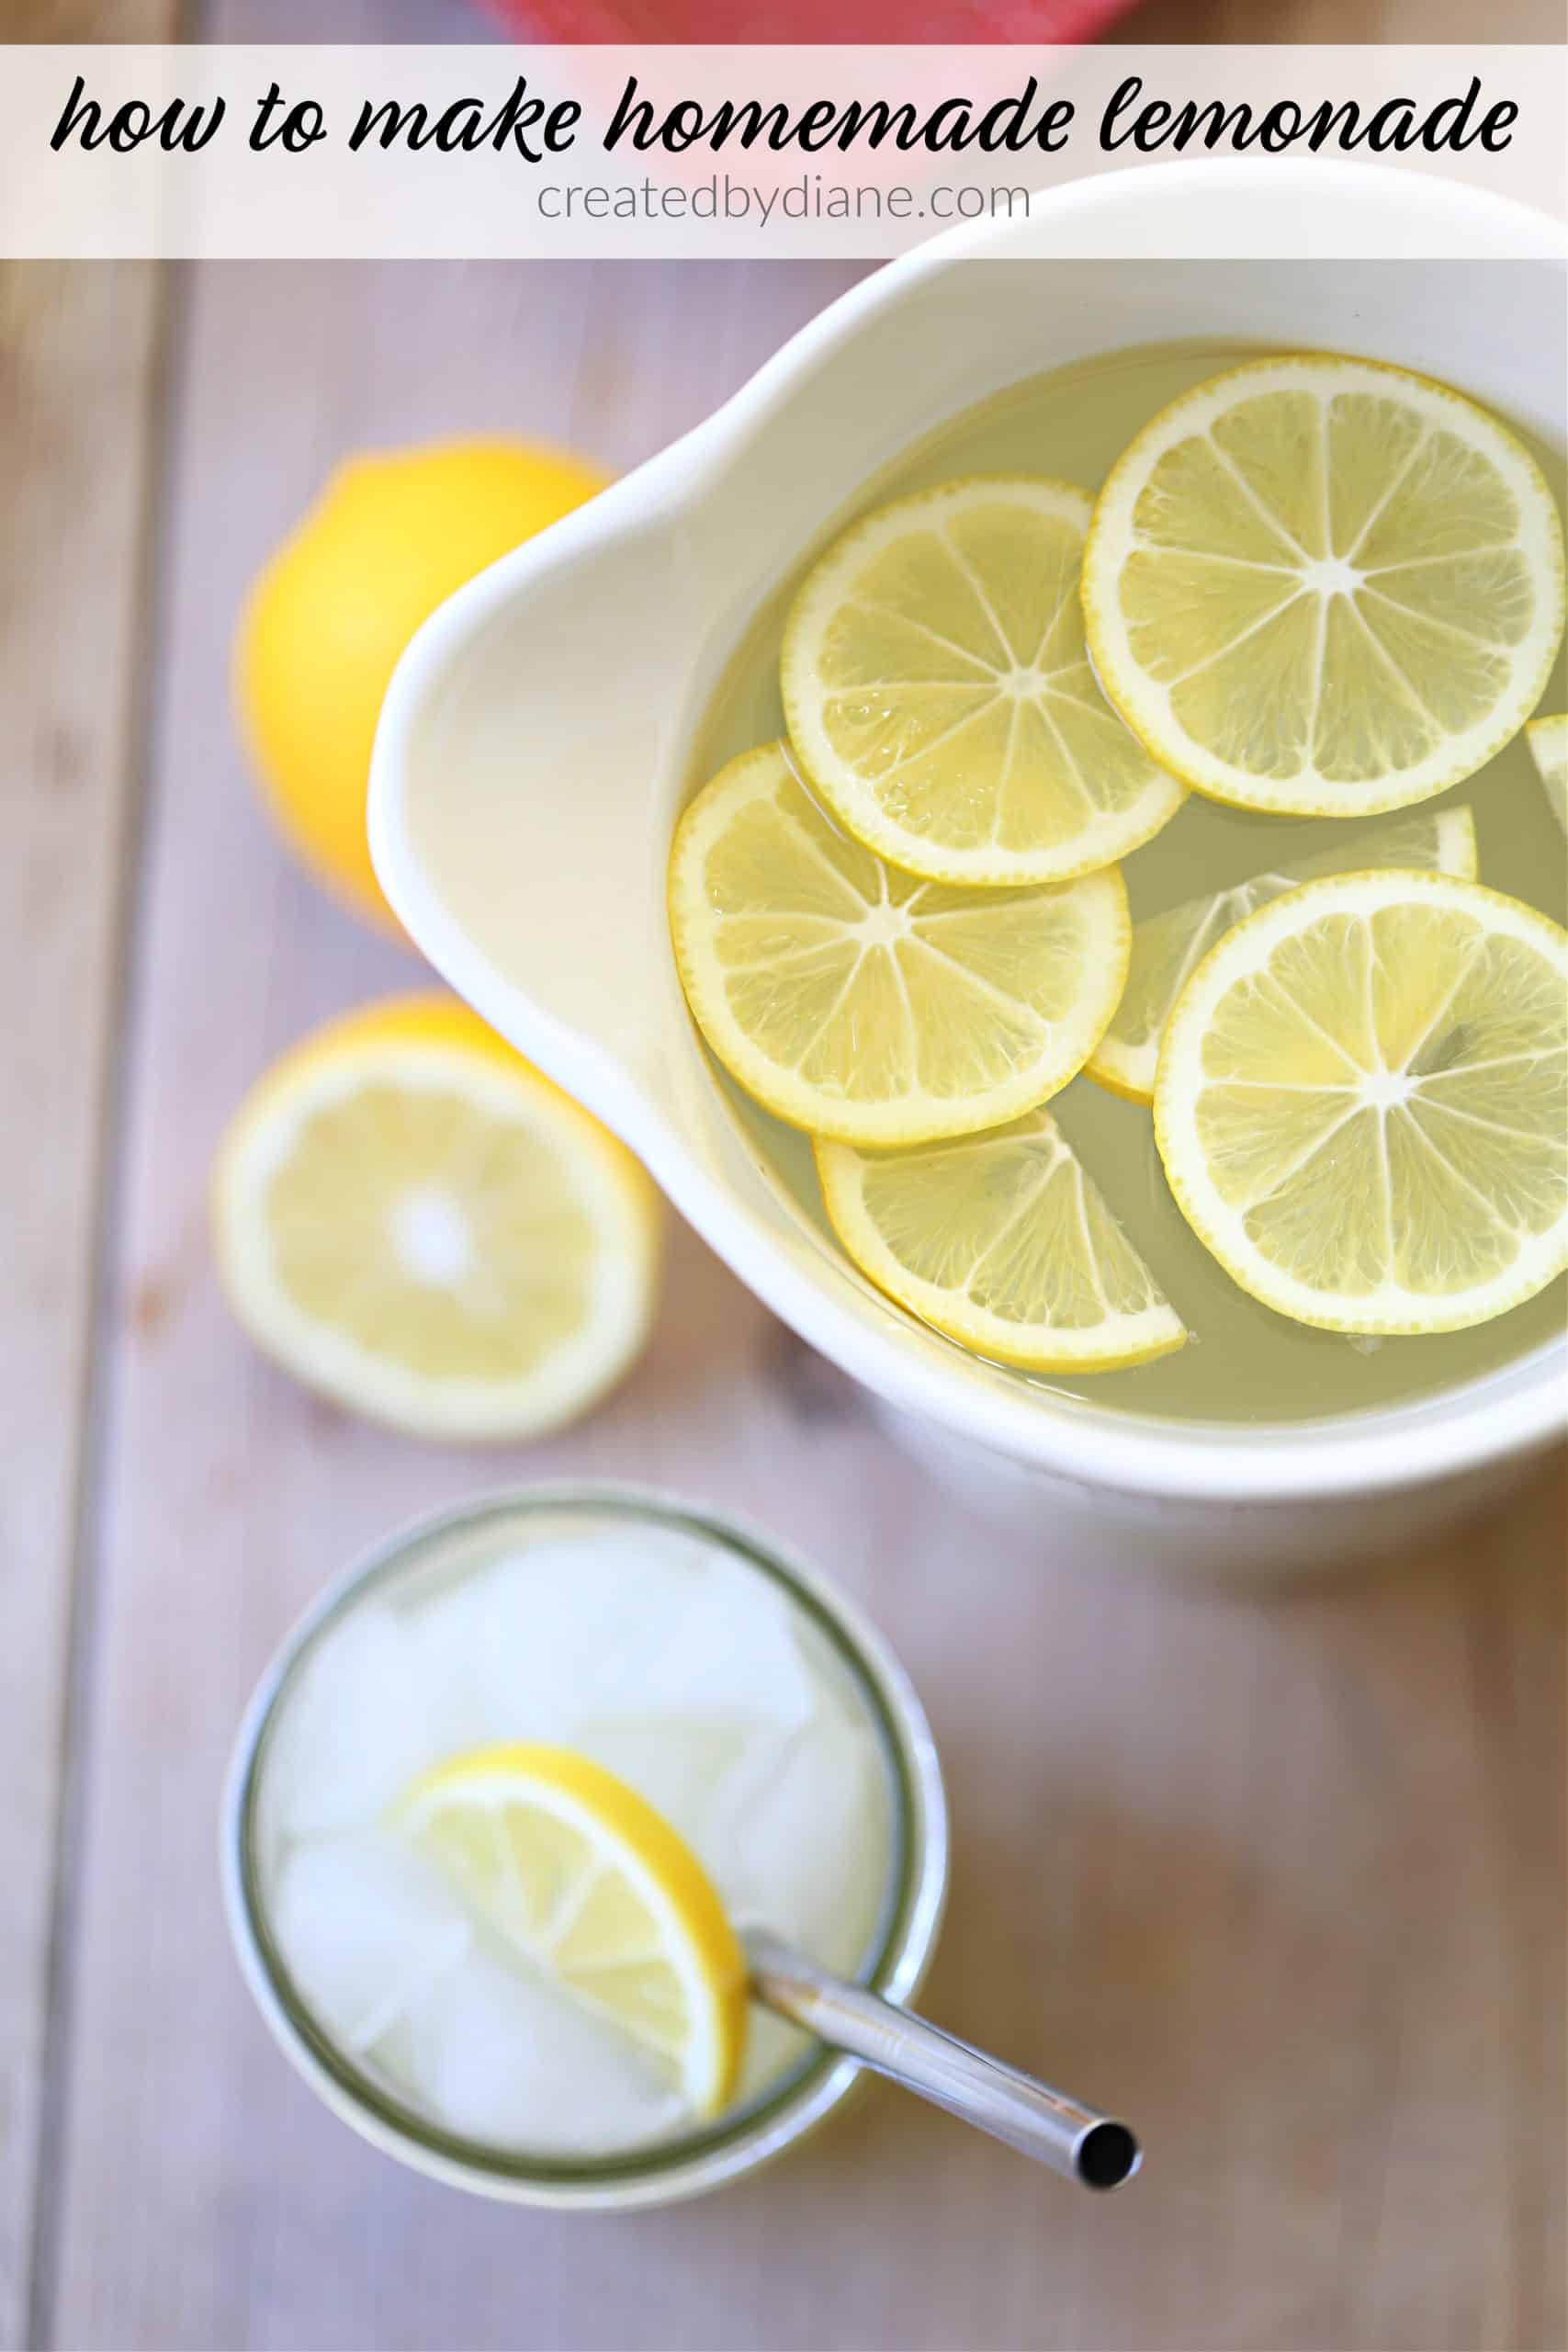 How to make Homemade Lemonade